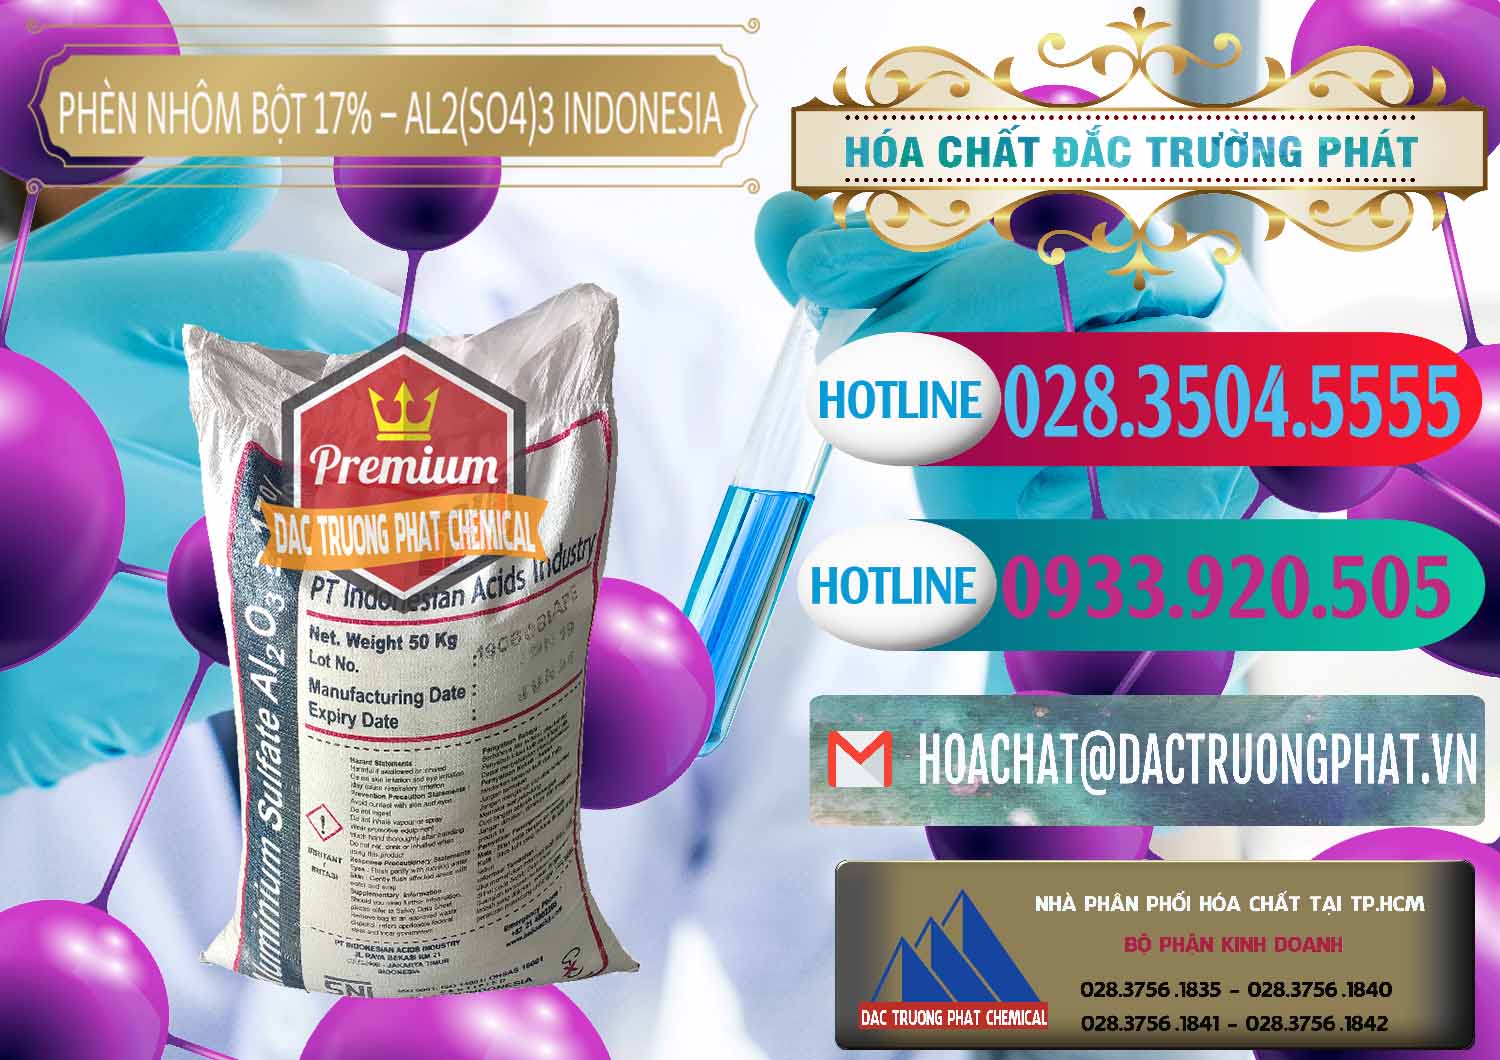 Chuyên phân phối - bán Phèn Nhôm Bột - Al2(SO4)3 17% bao 50kg Indonesia - 0112 - Nhà cung cấp _ phân phối hóa chất tại TP.HCM - truongphat.vn